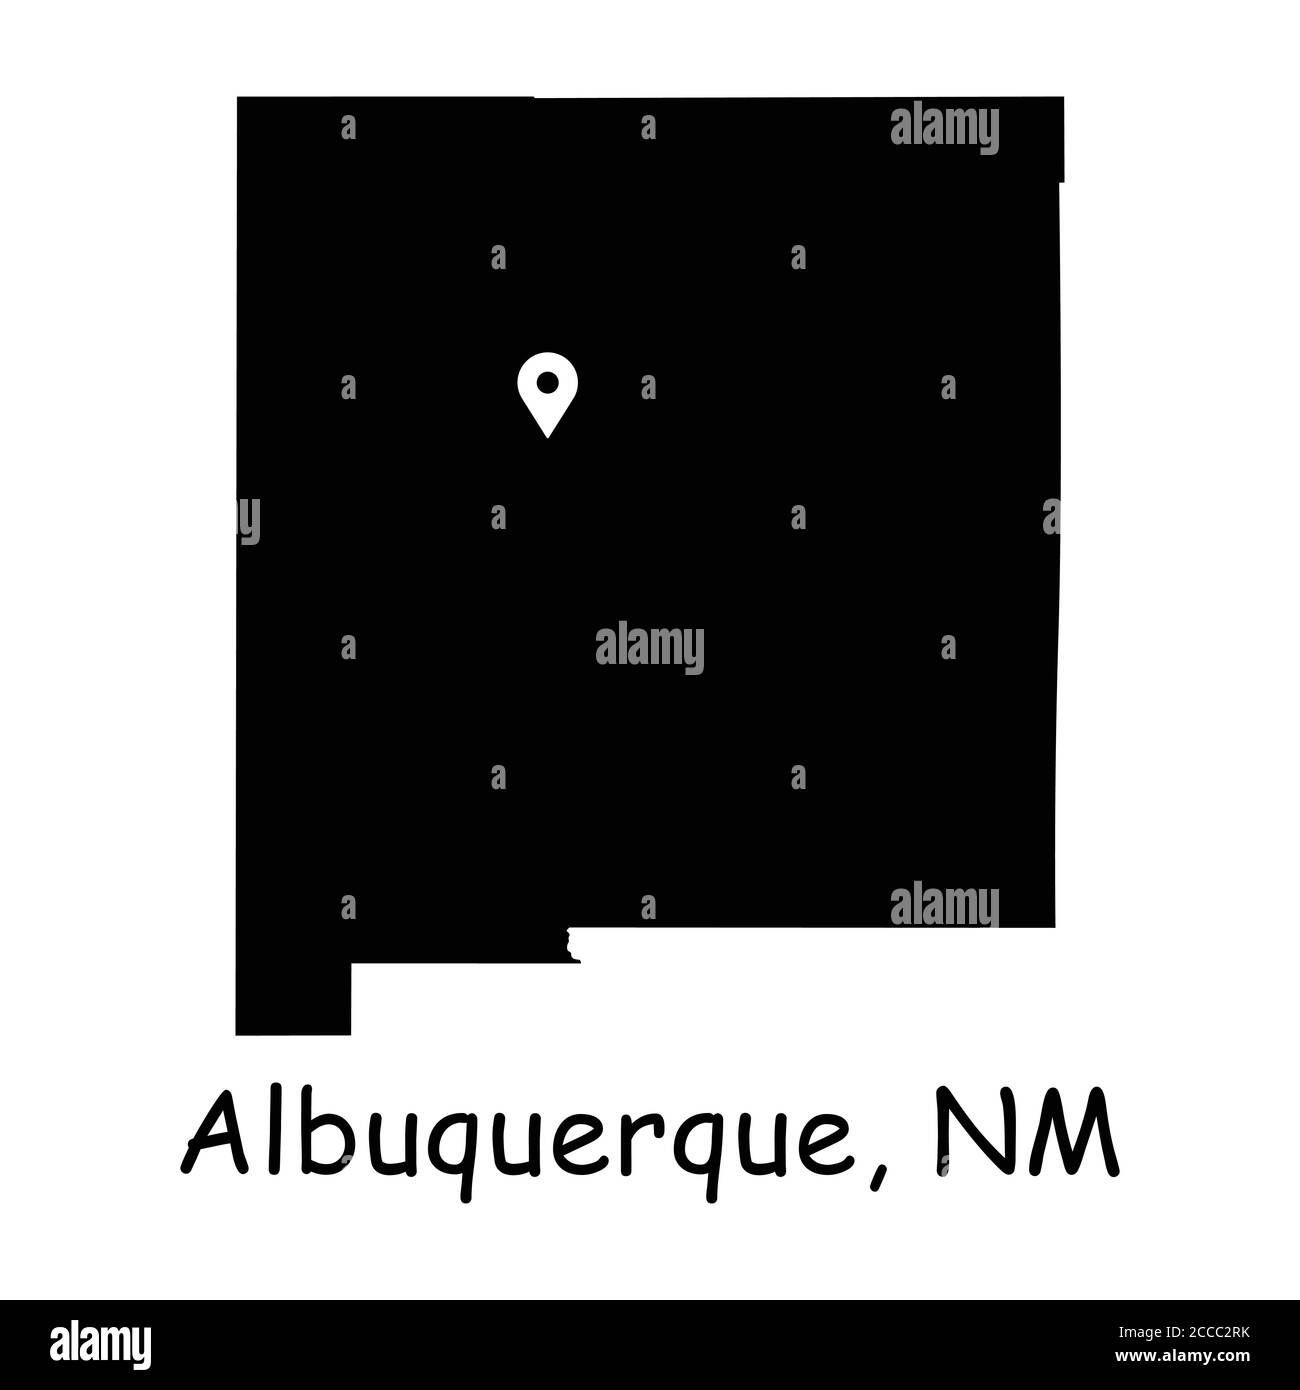 Albuquerque auf der New Mexico State Map. Detaillierte NM State Map mit Ortsnadel in Albuquerque City. Schwarze Silhouette Vektor-Karte isoliert auf weißem Hintergrund Stock Vektor